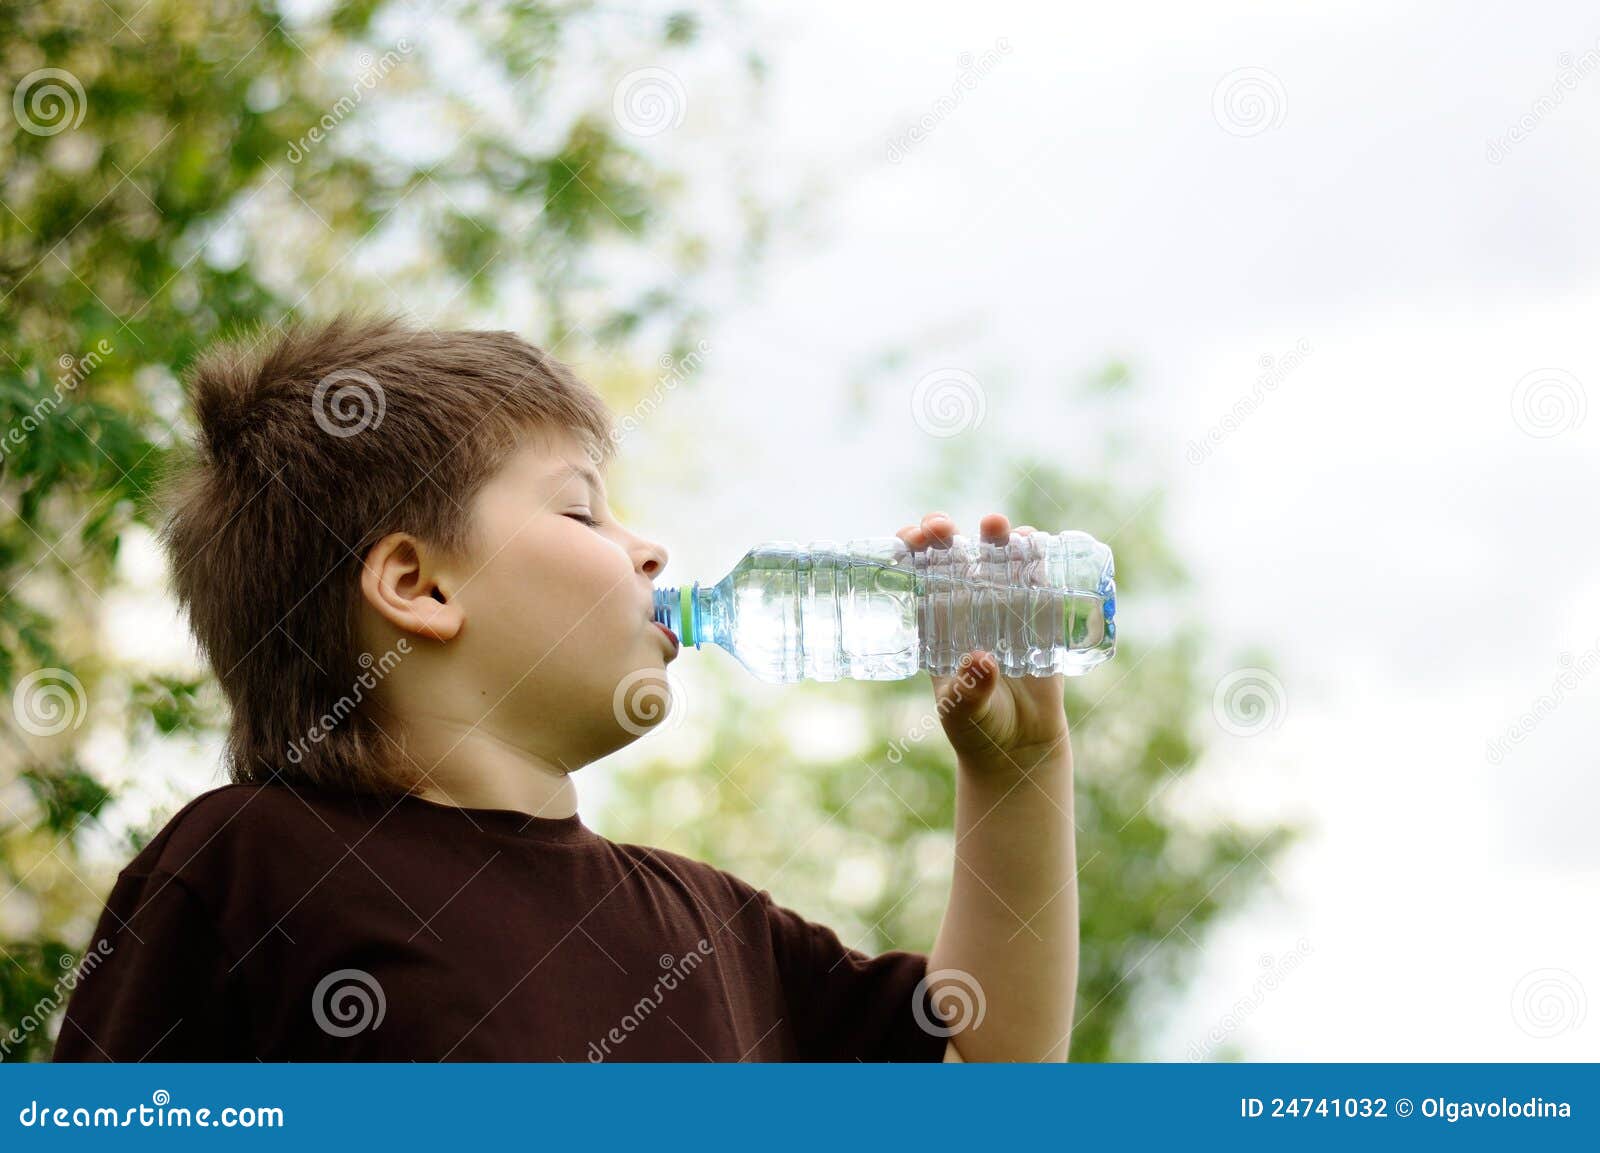 Вода которую мальчик несет. Бутылка для воды для мальчика. Мальчик на природе. Мальчик с баклажкой воды.